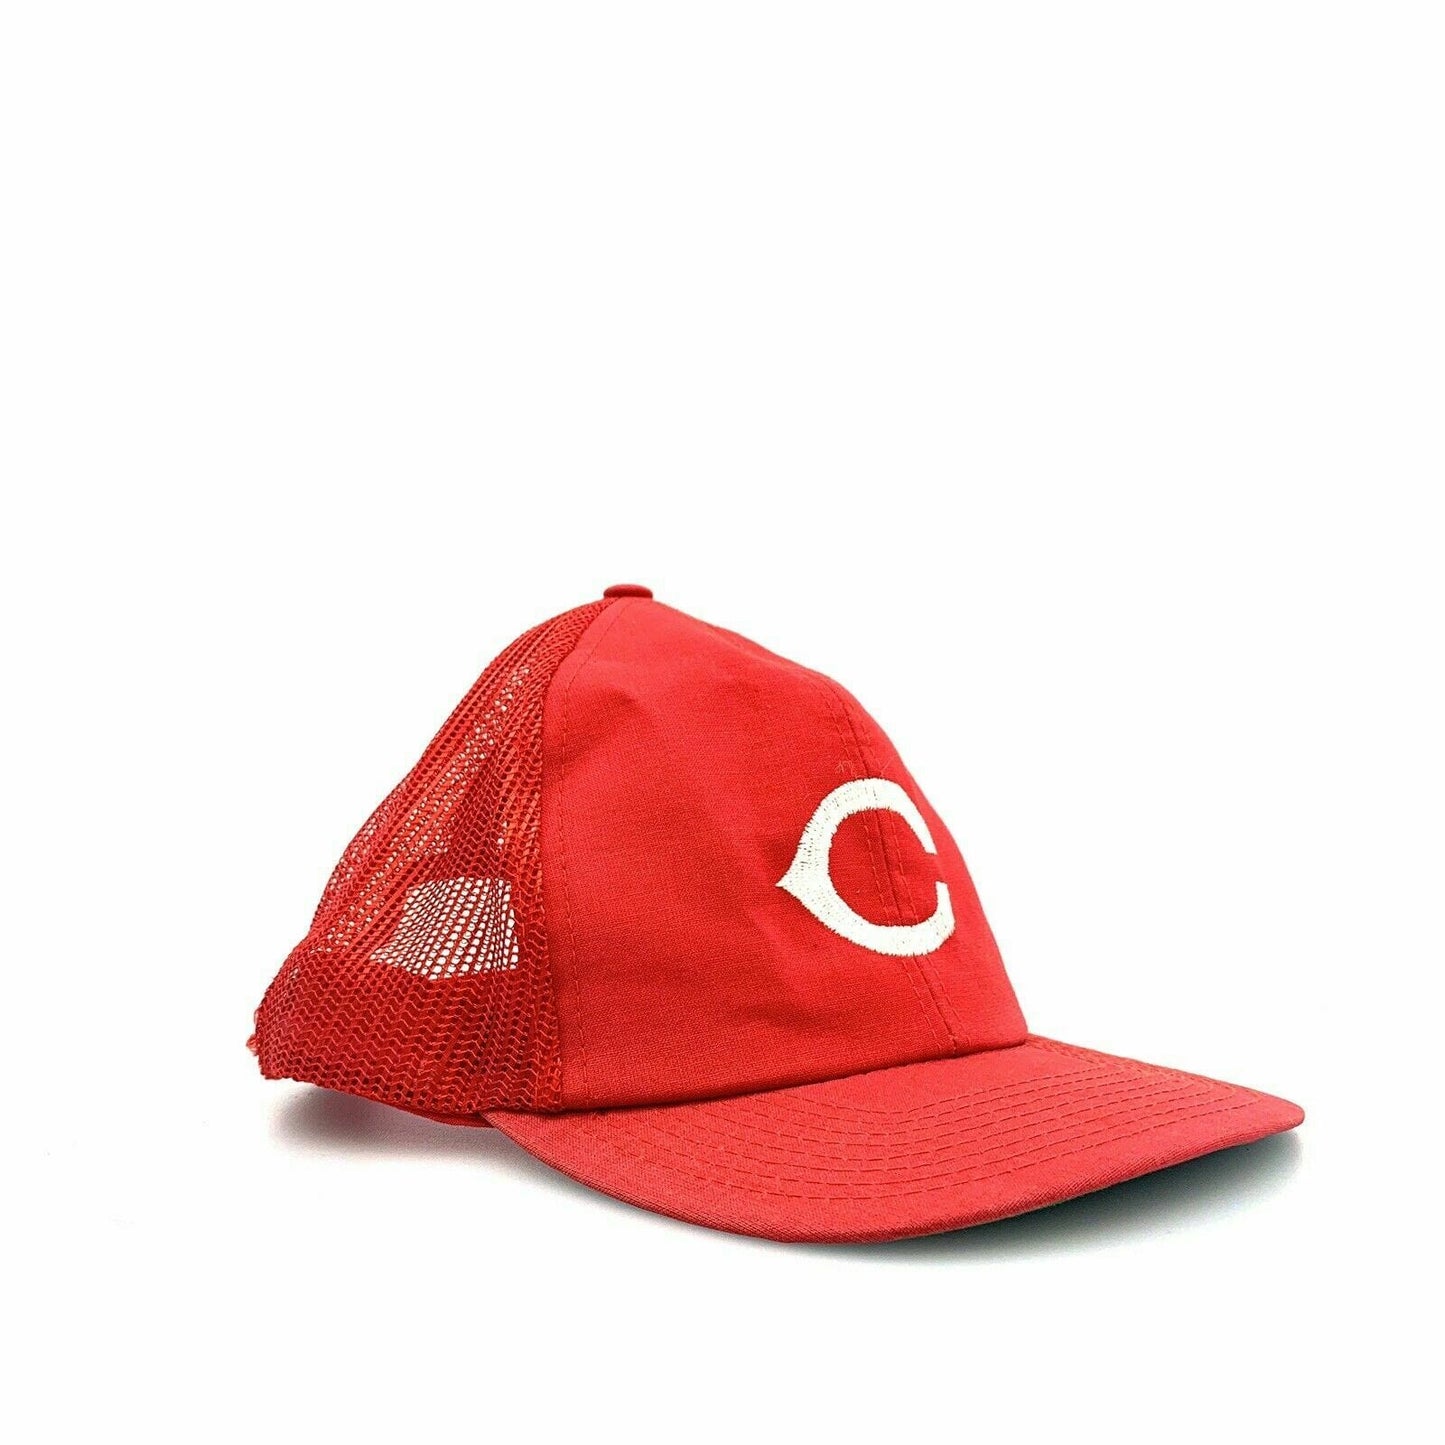 Vintage Twins Enterprises Cincinnati Reds Snapback Trucker Hat, Red - Size M/L - parsimonyshoppes